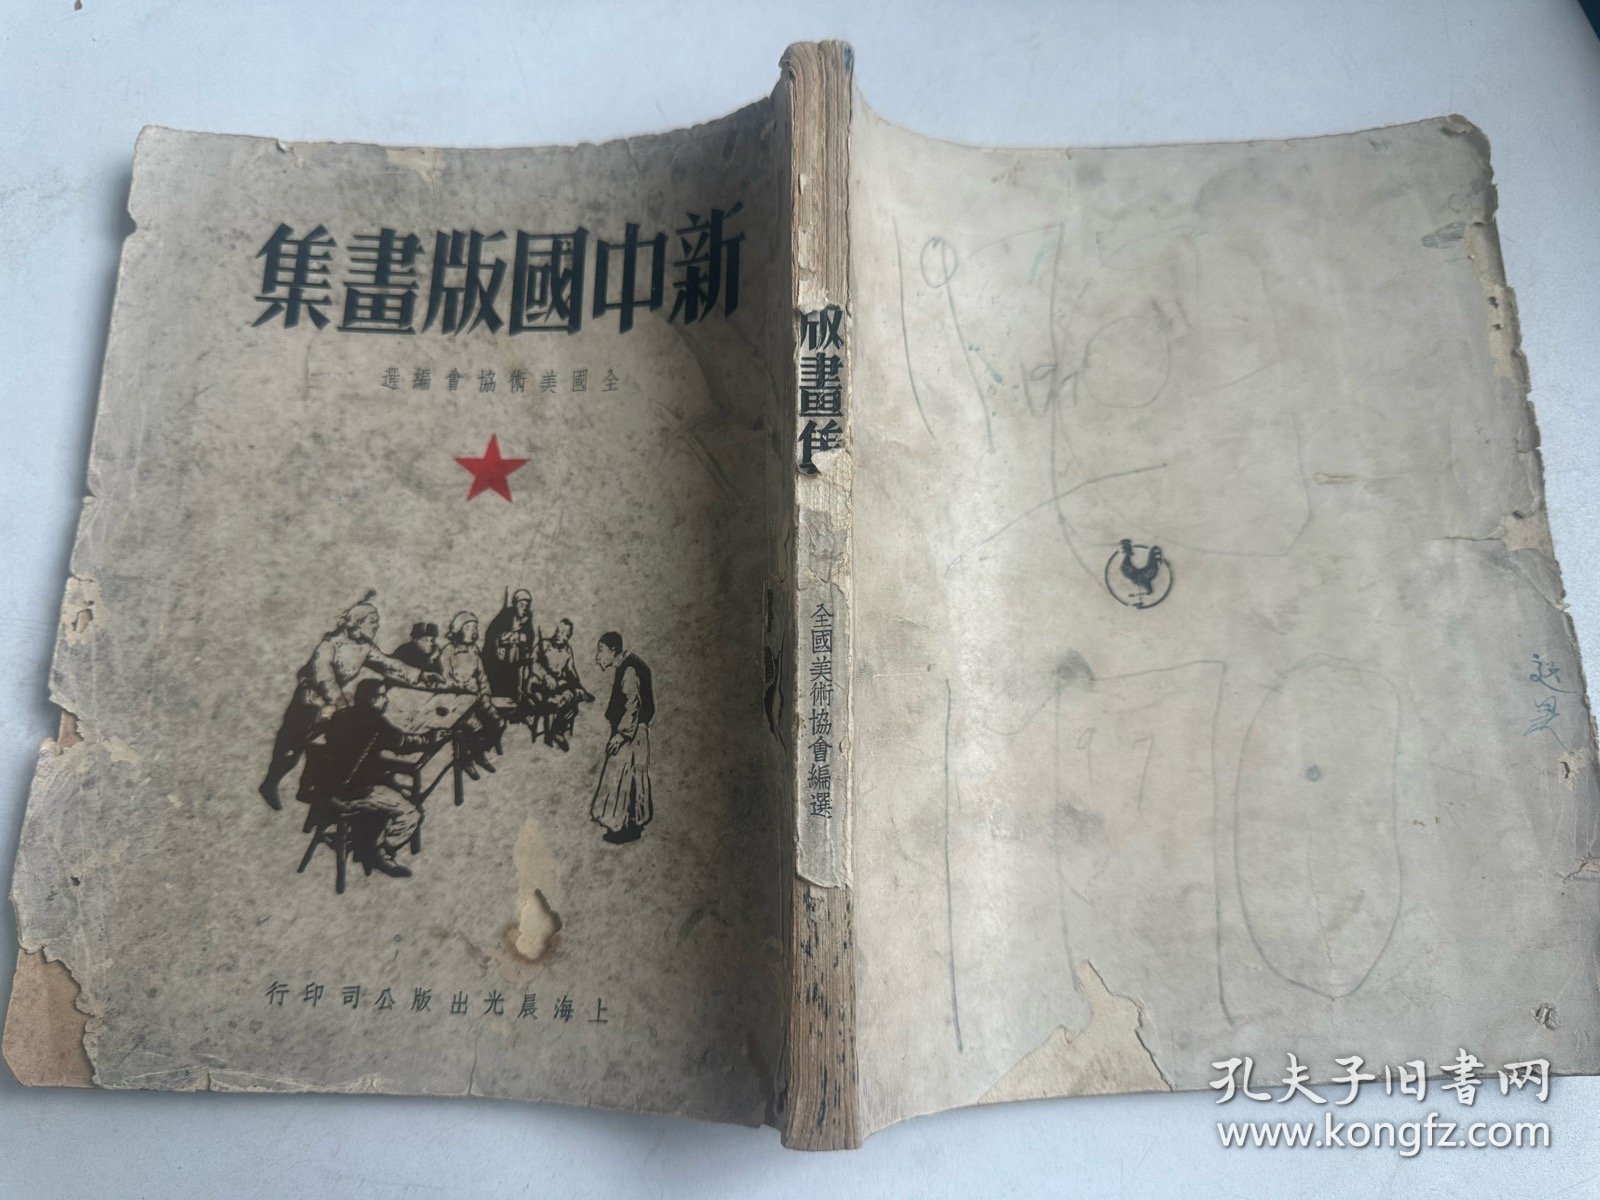 1949年画册《新中国版画集》 大开本  缺前面彩页